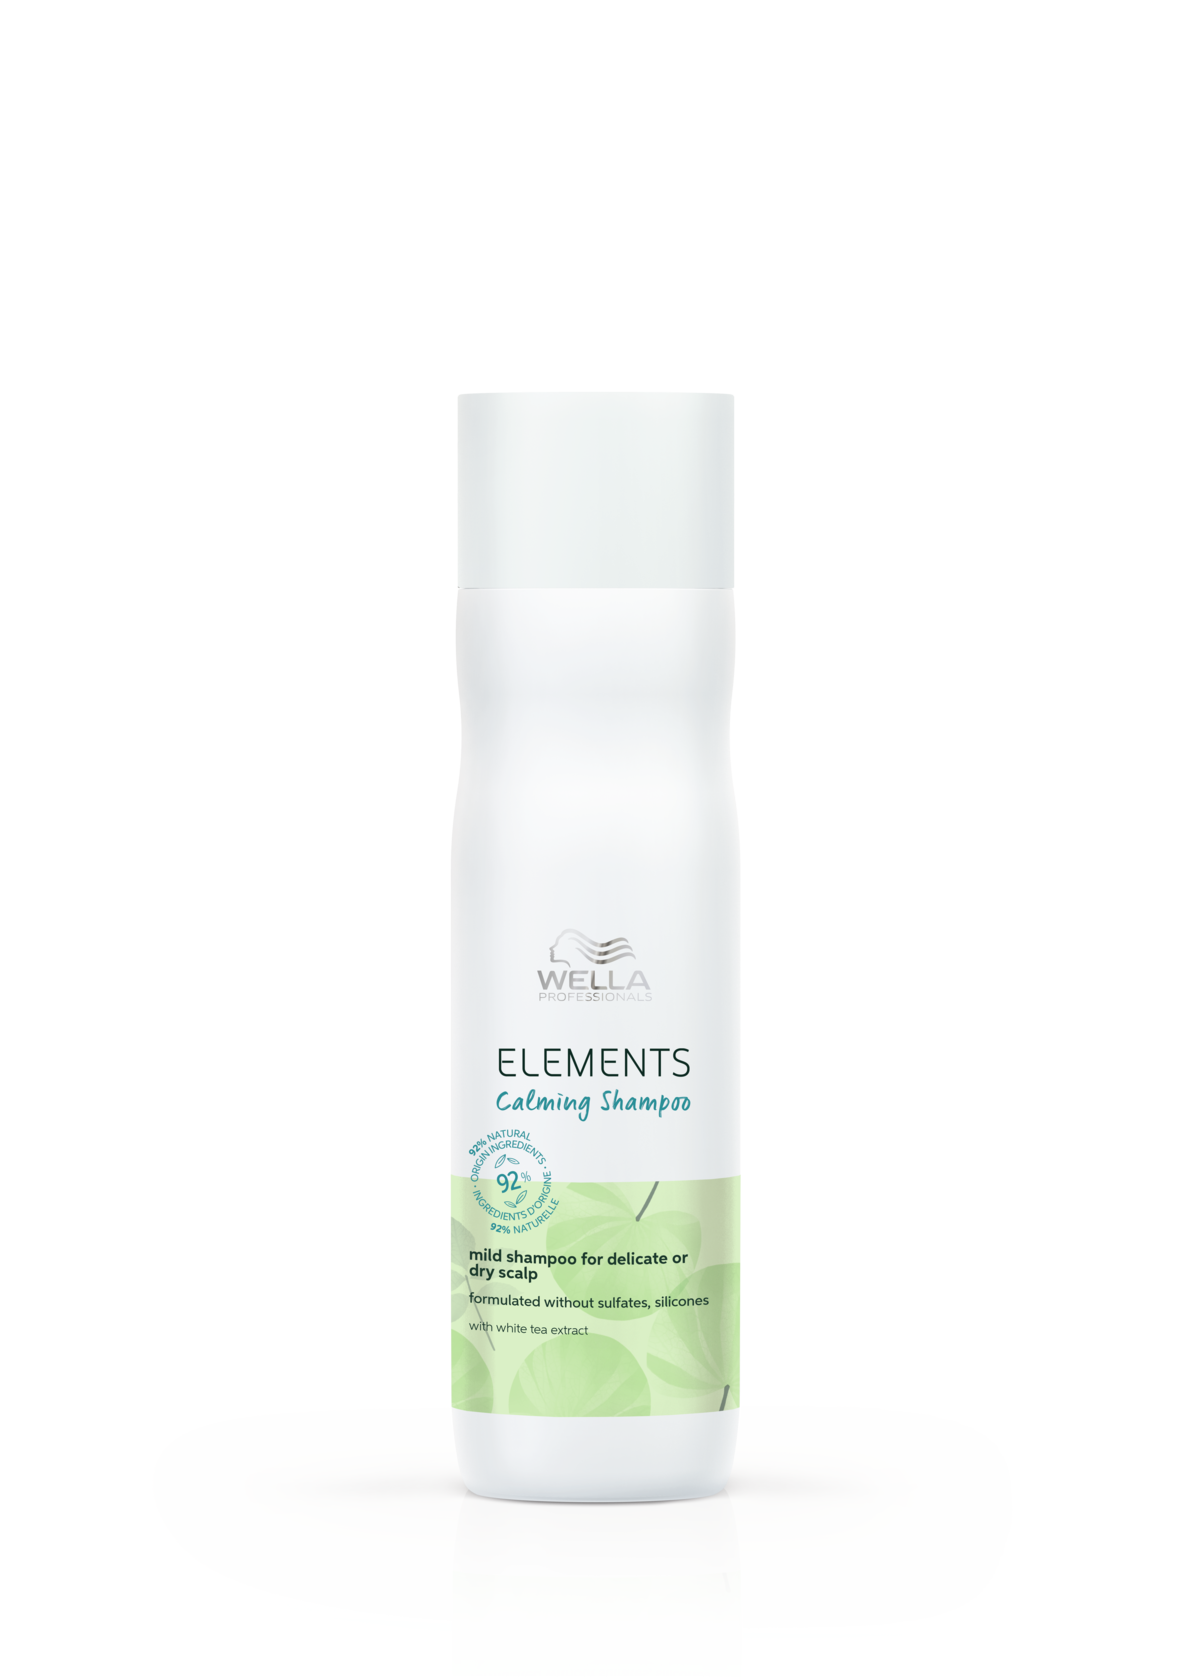 Шампуни для волос:  Wella Professionals -  Успокаивающий мягкий шампунь для чувствительной или сухой кожи головы Elements Calming Shampoo (250 мл)